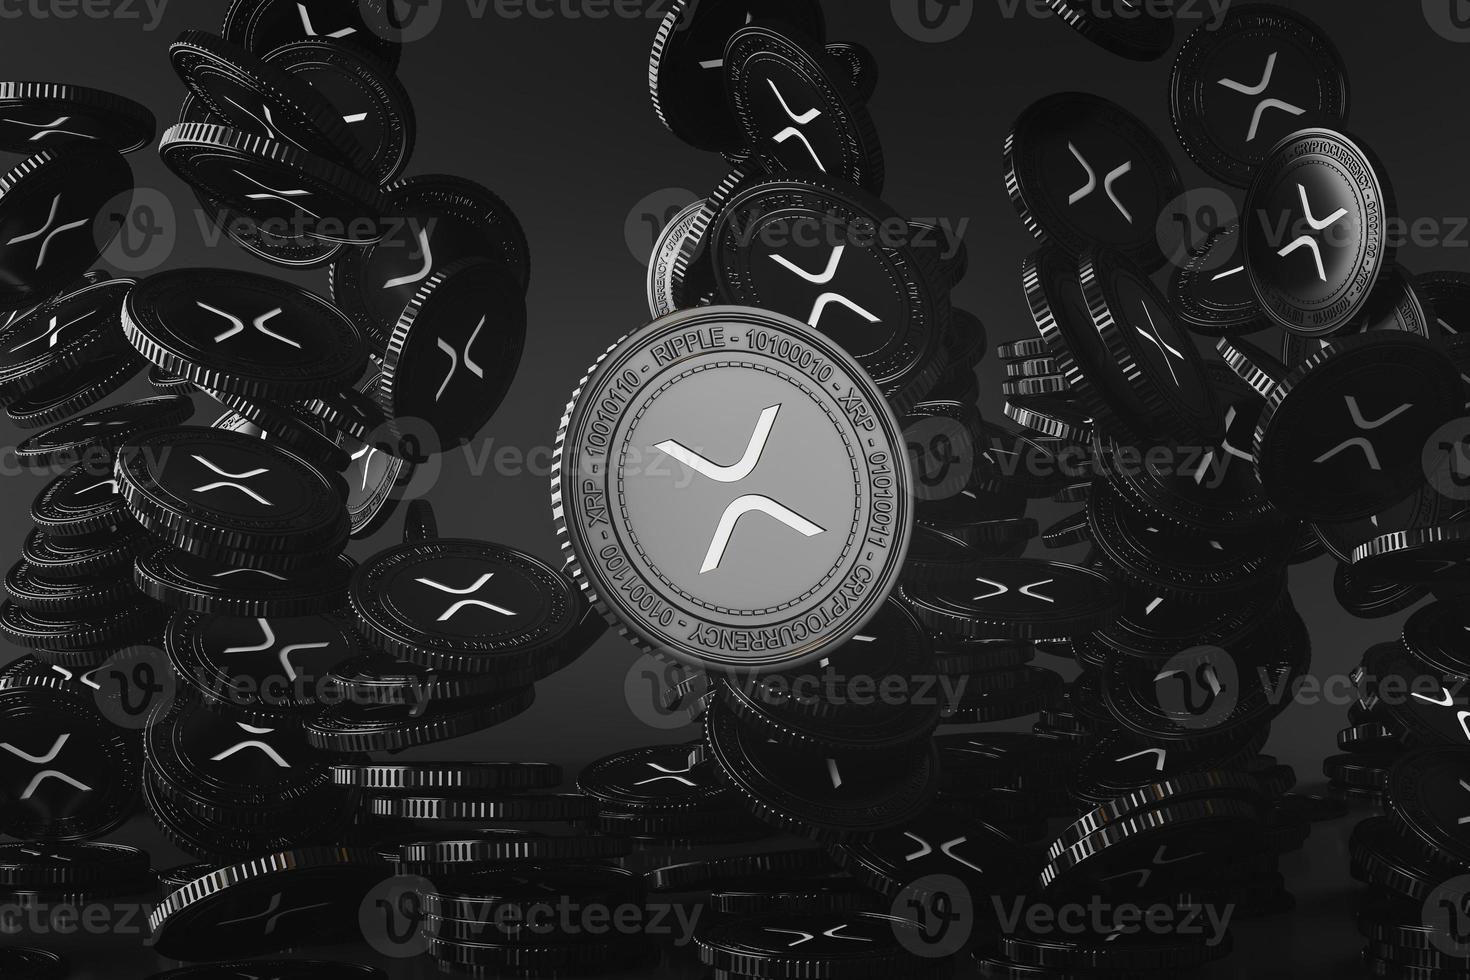 svarta xrp-mynt som faller uppifrån i den svarta scenen, mockup av digitala valutamynt för finansiellt, främjande av tokenväxling, reklamsyfte. 3d-rendering foto